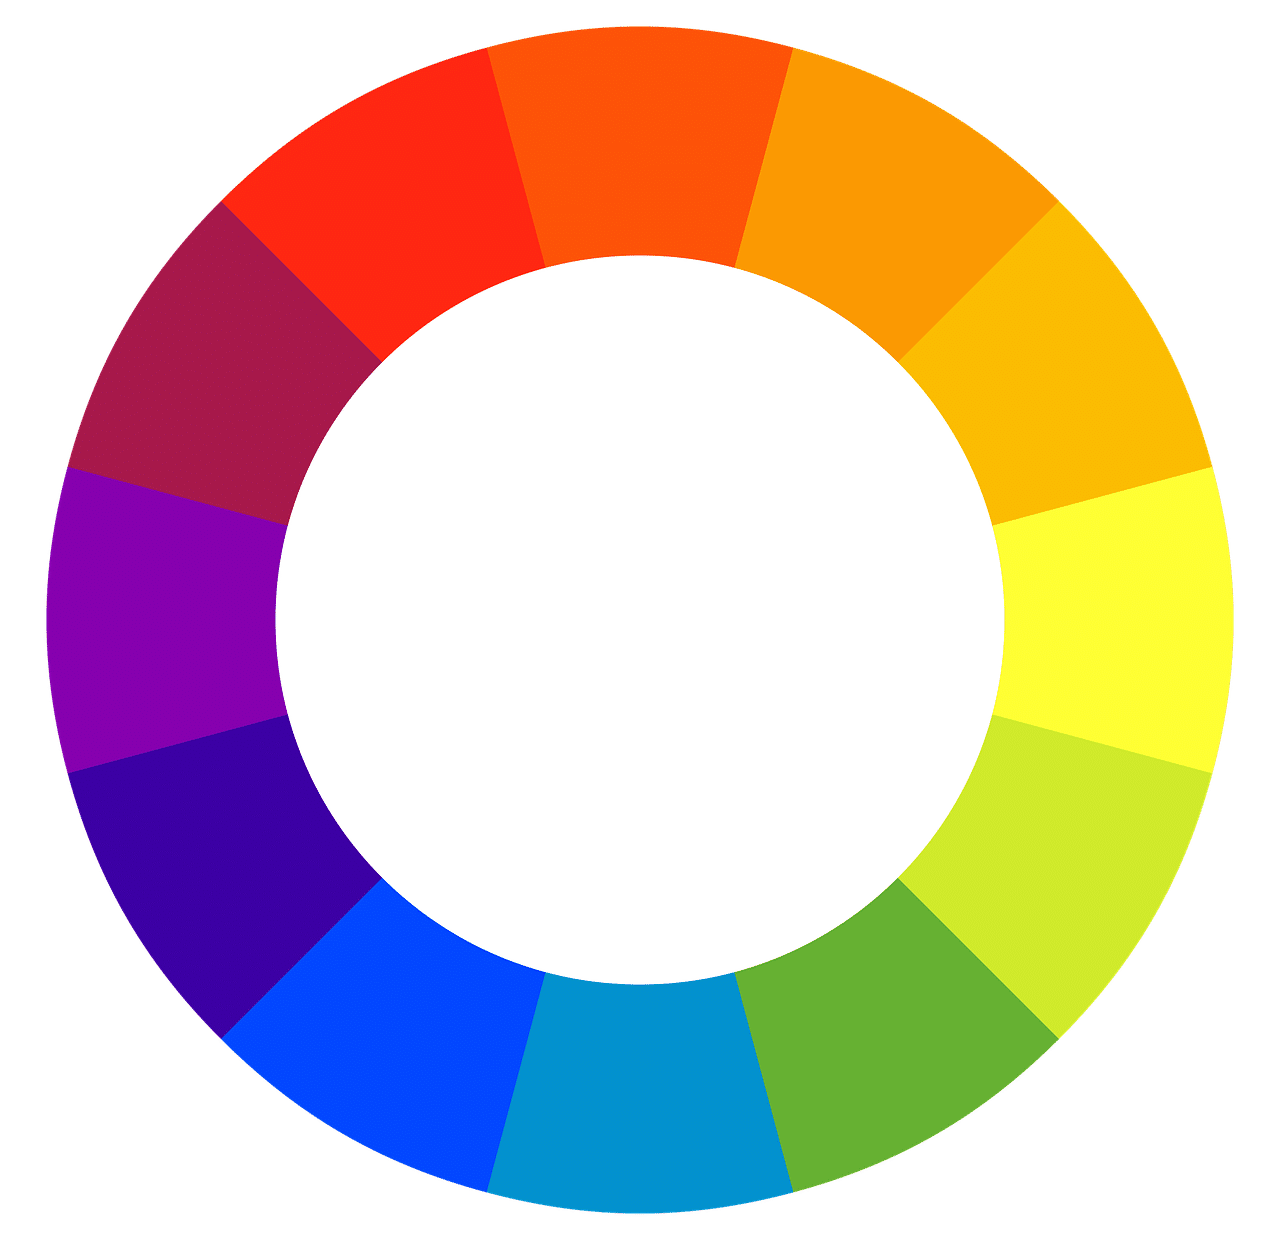 Colores en círculo